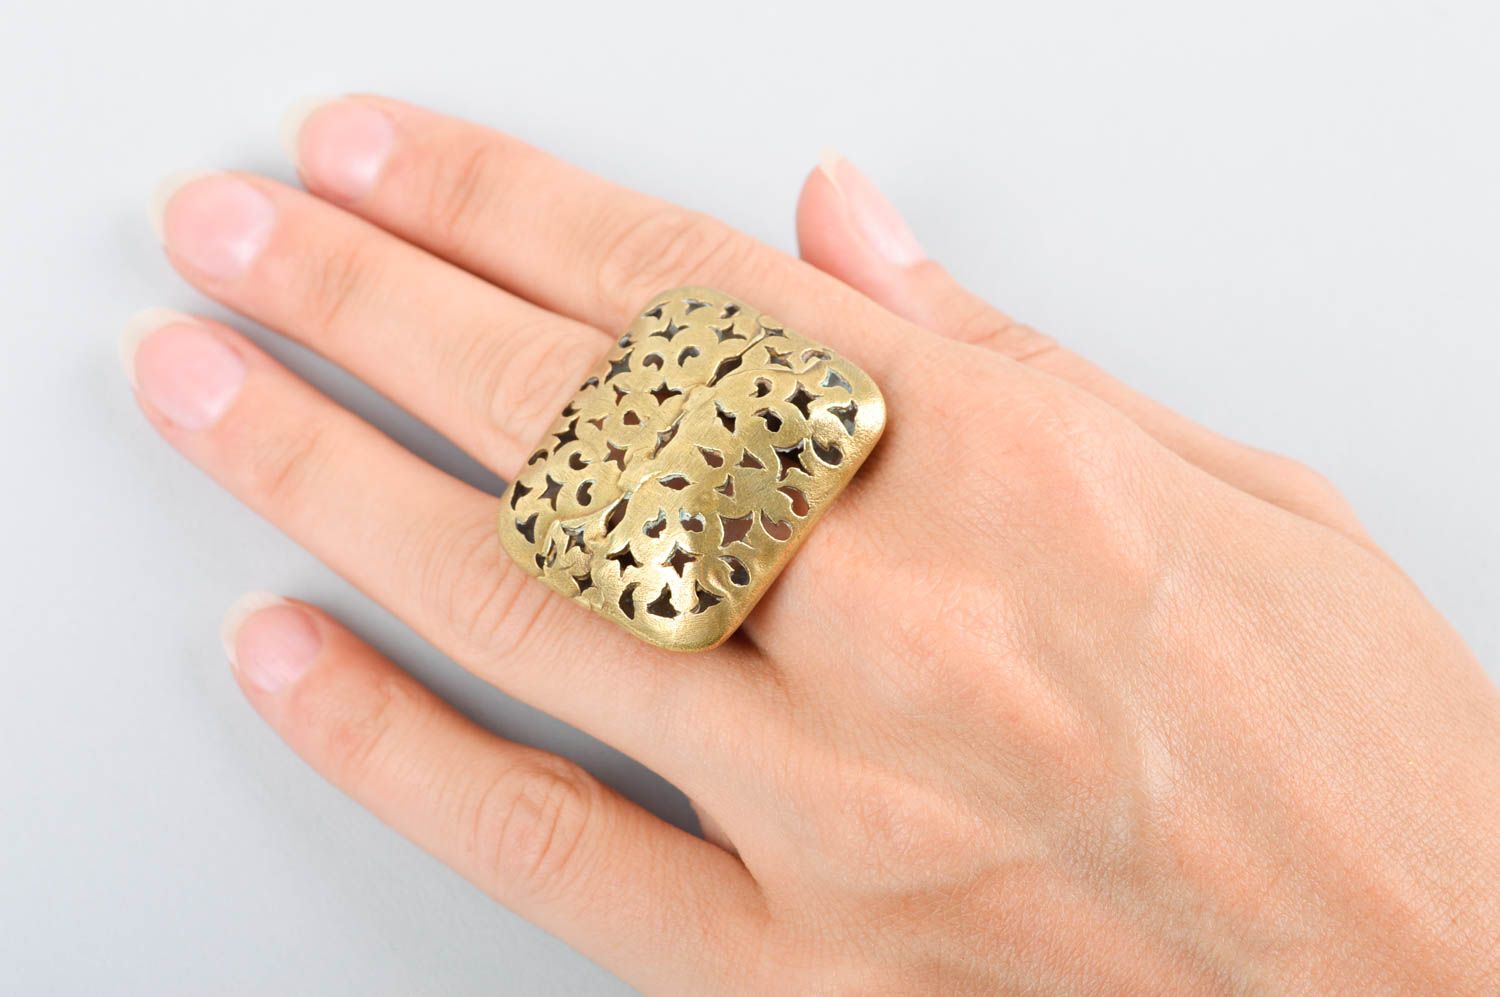 Украшение ручной работы женское кольцо украшение из металла с резными узорами фото 5